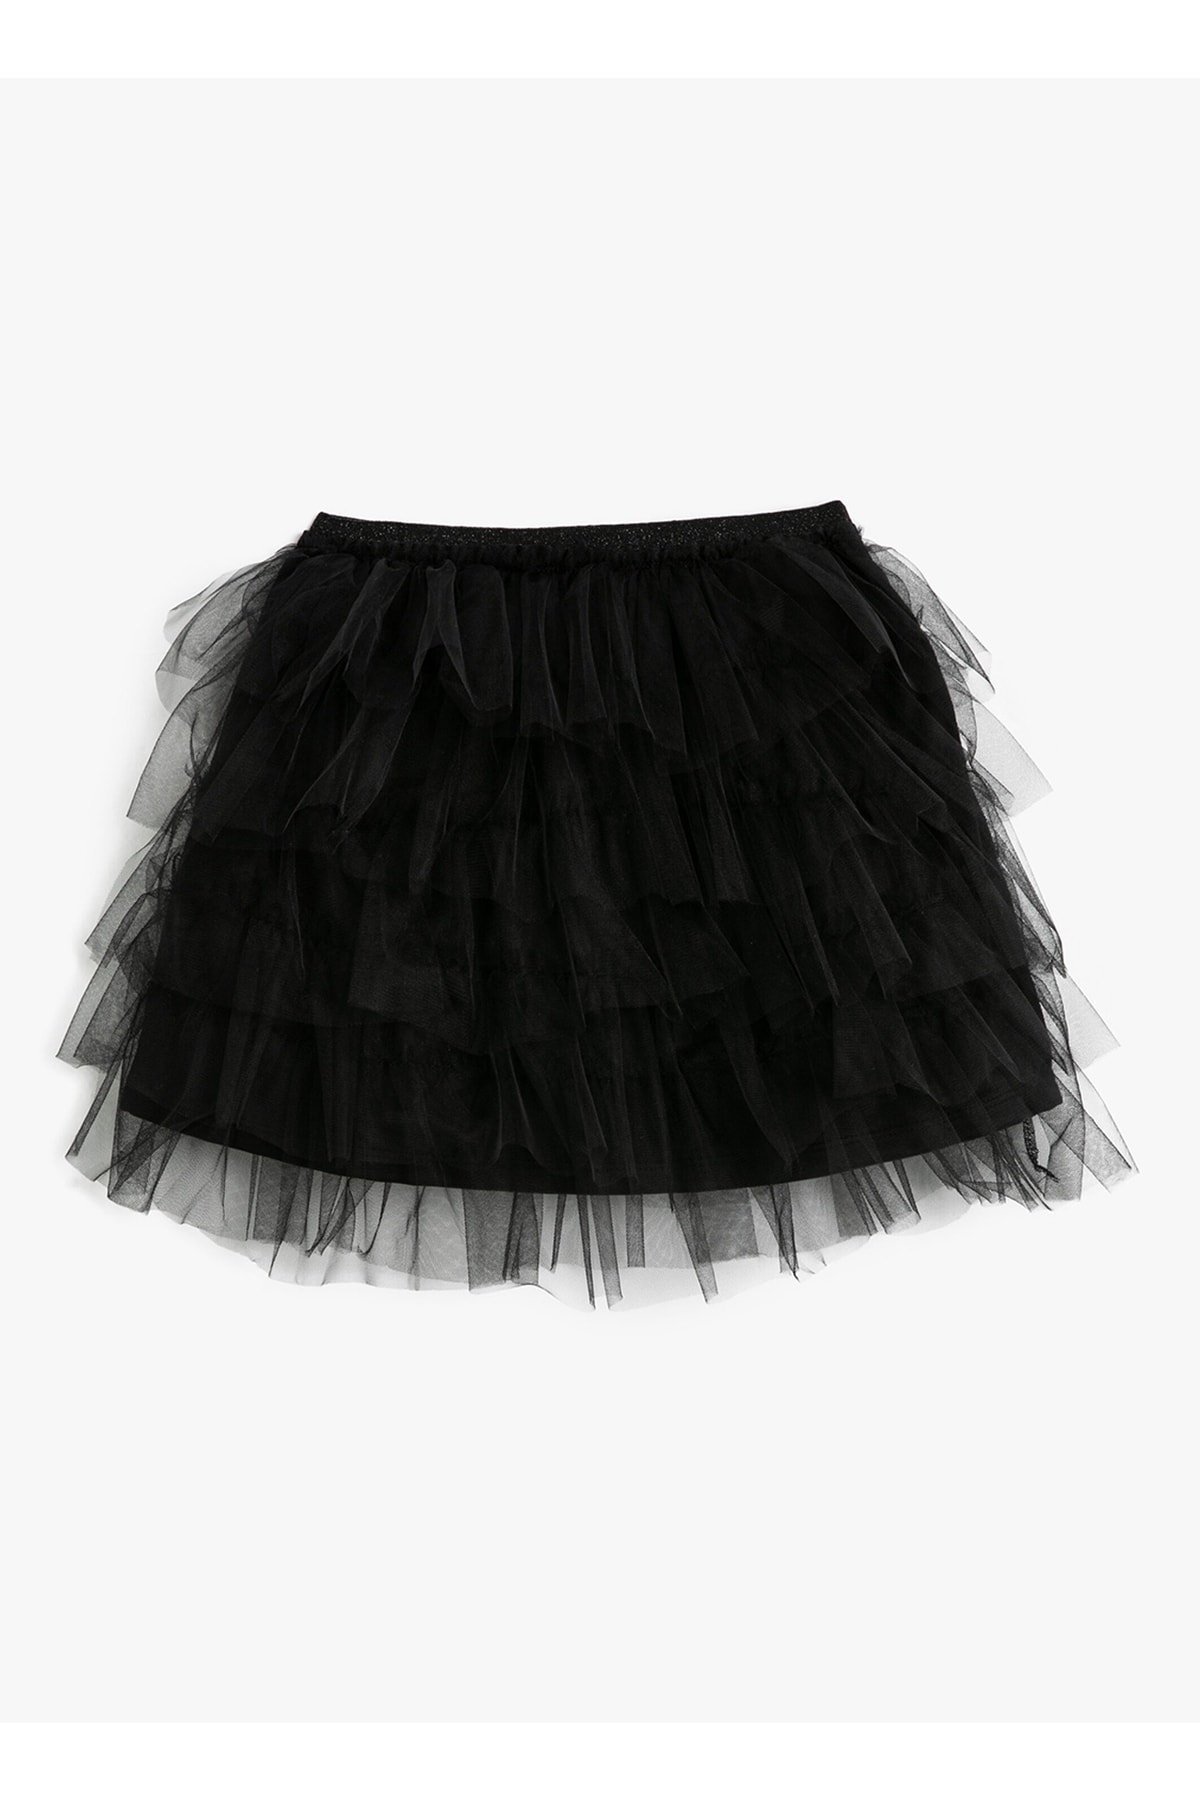 Koton Elastic Waist Fluffy Black Straight Short Girl Skirt 3skg70012ak